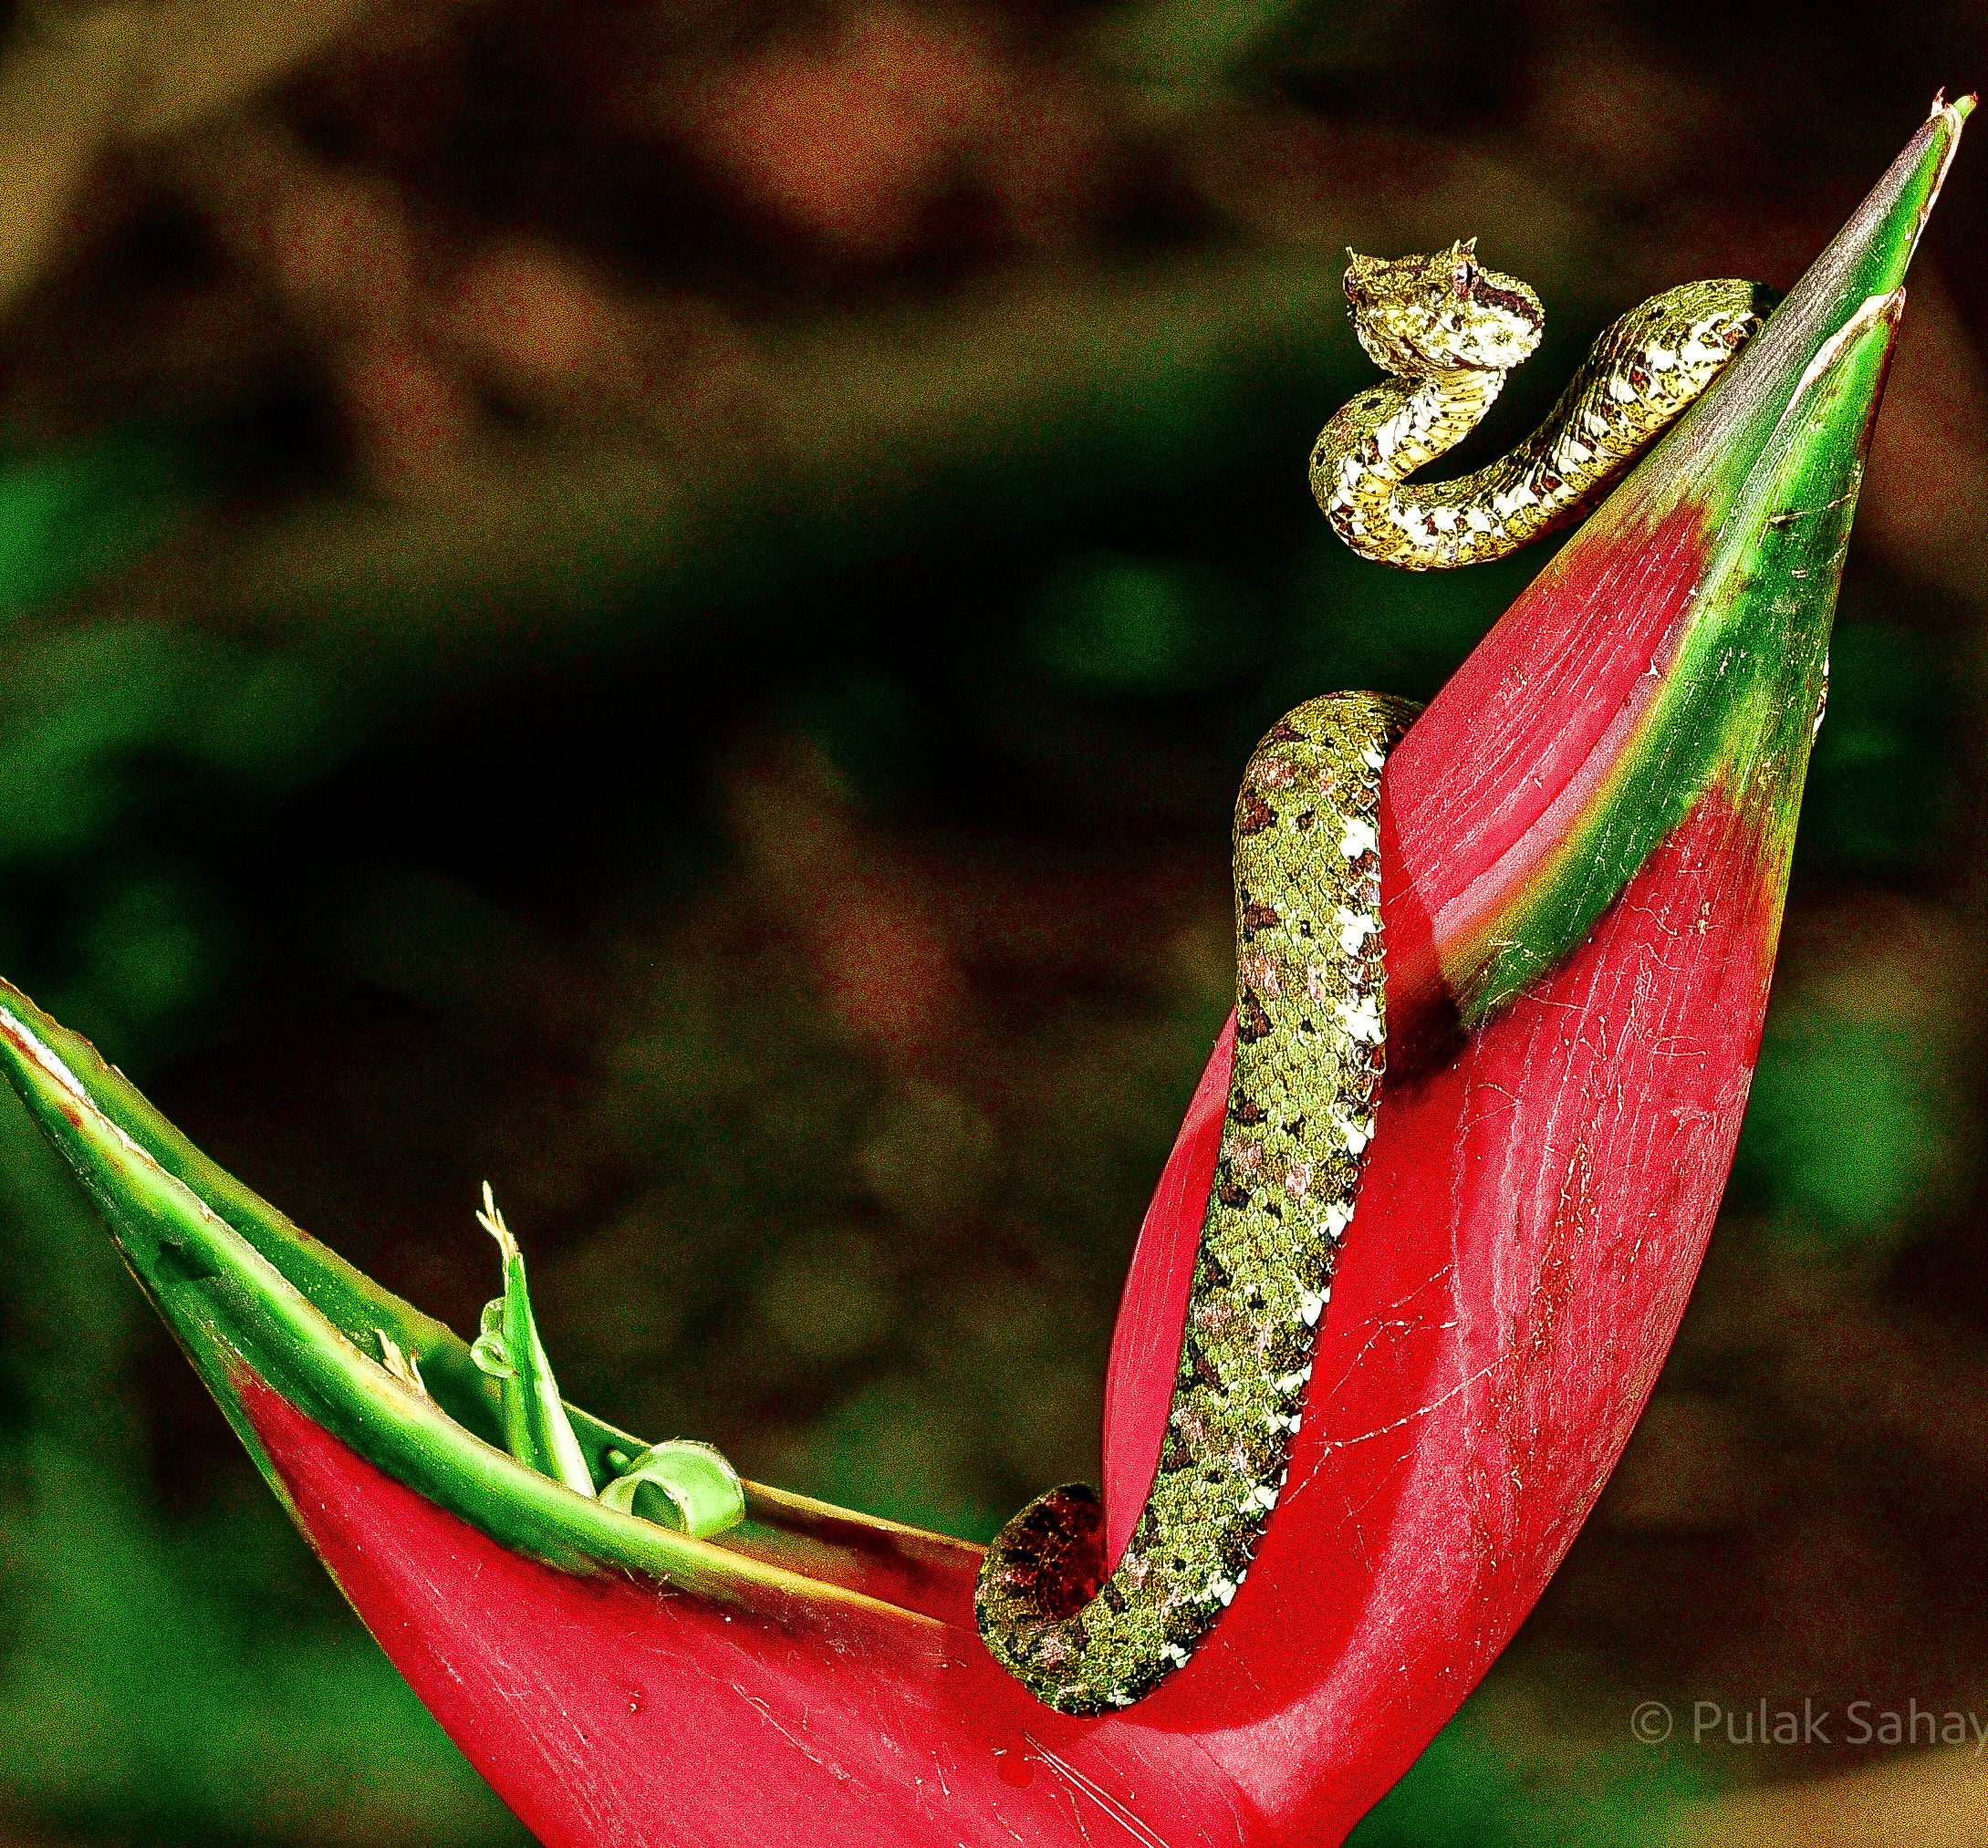 Viper alert on flower